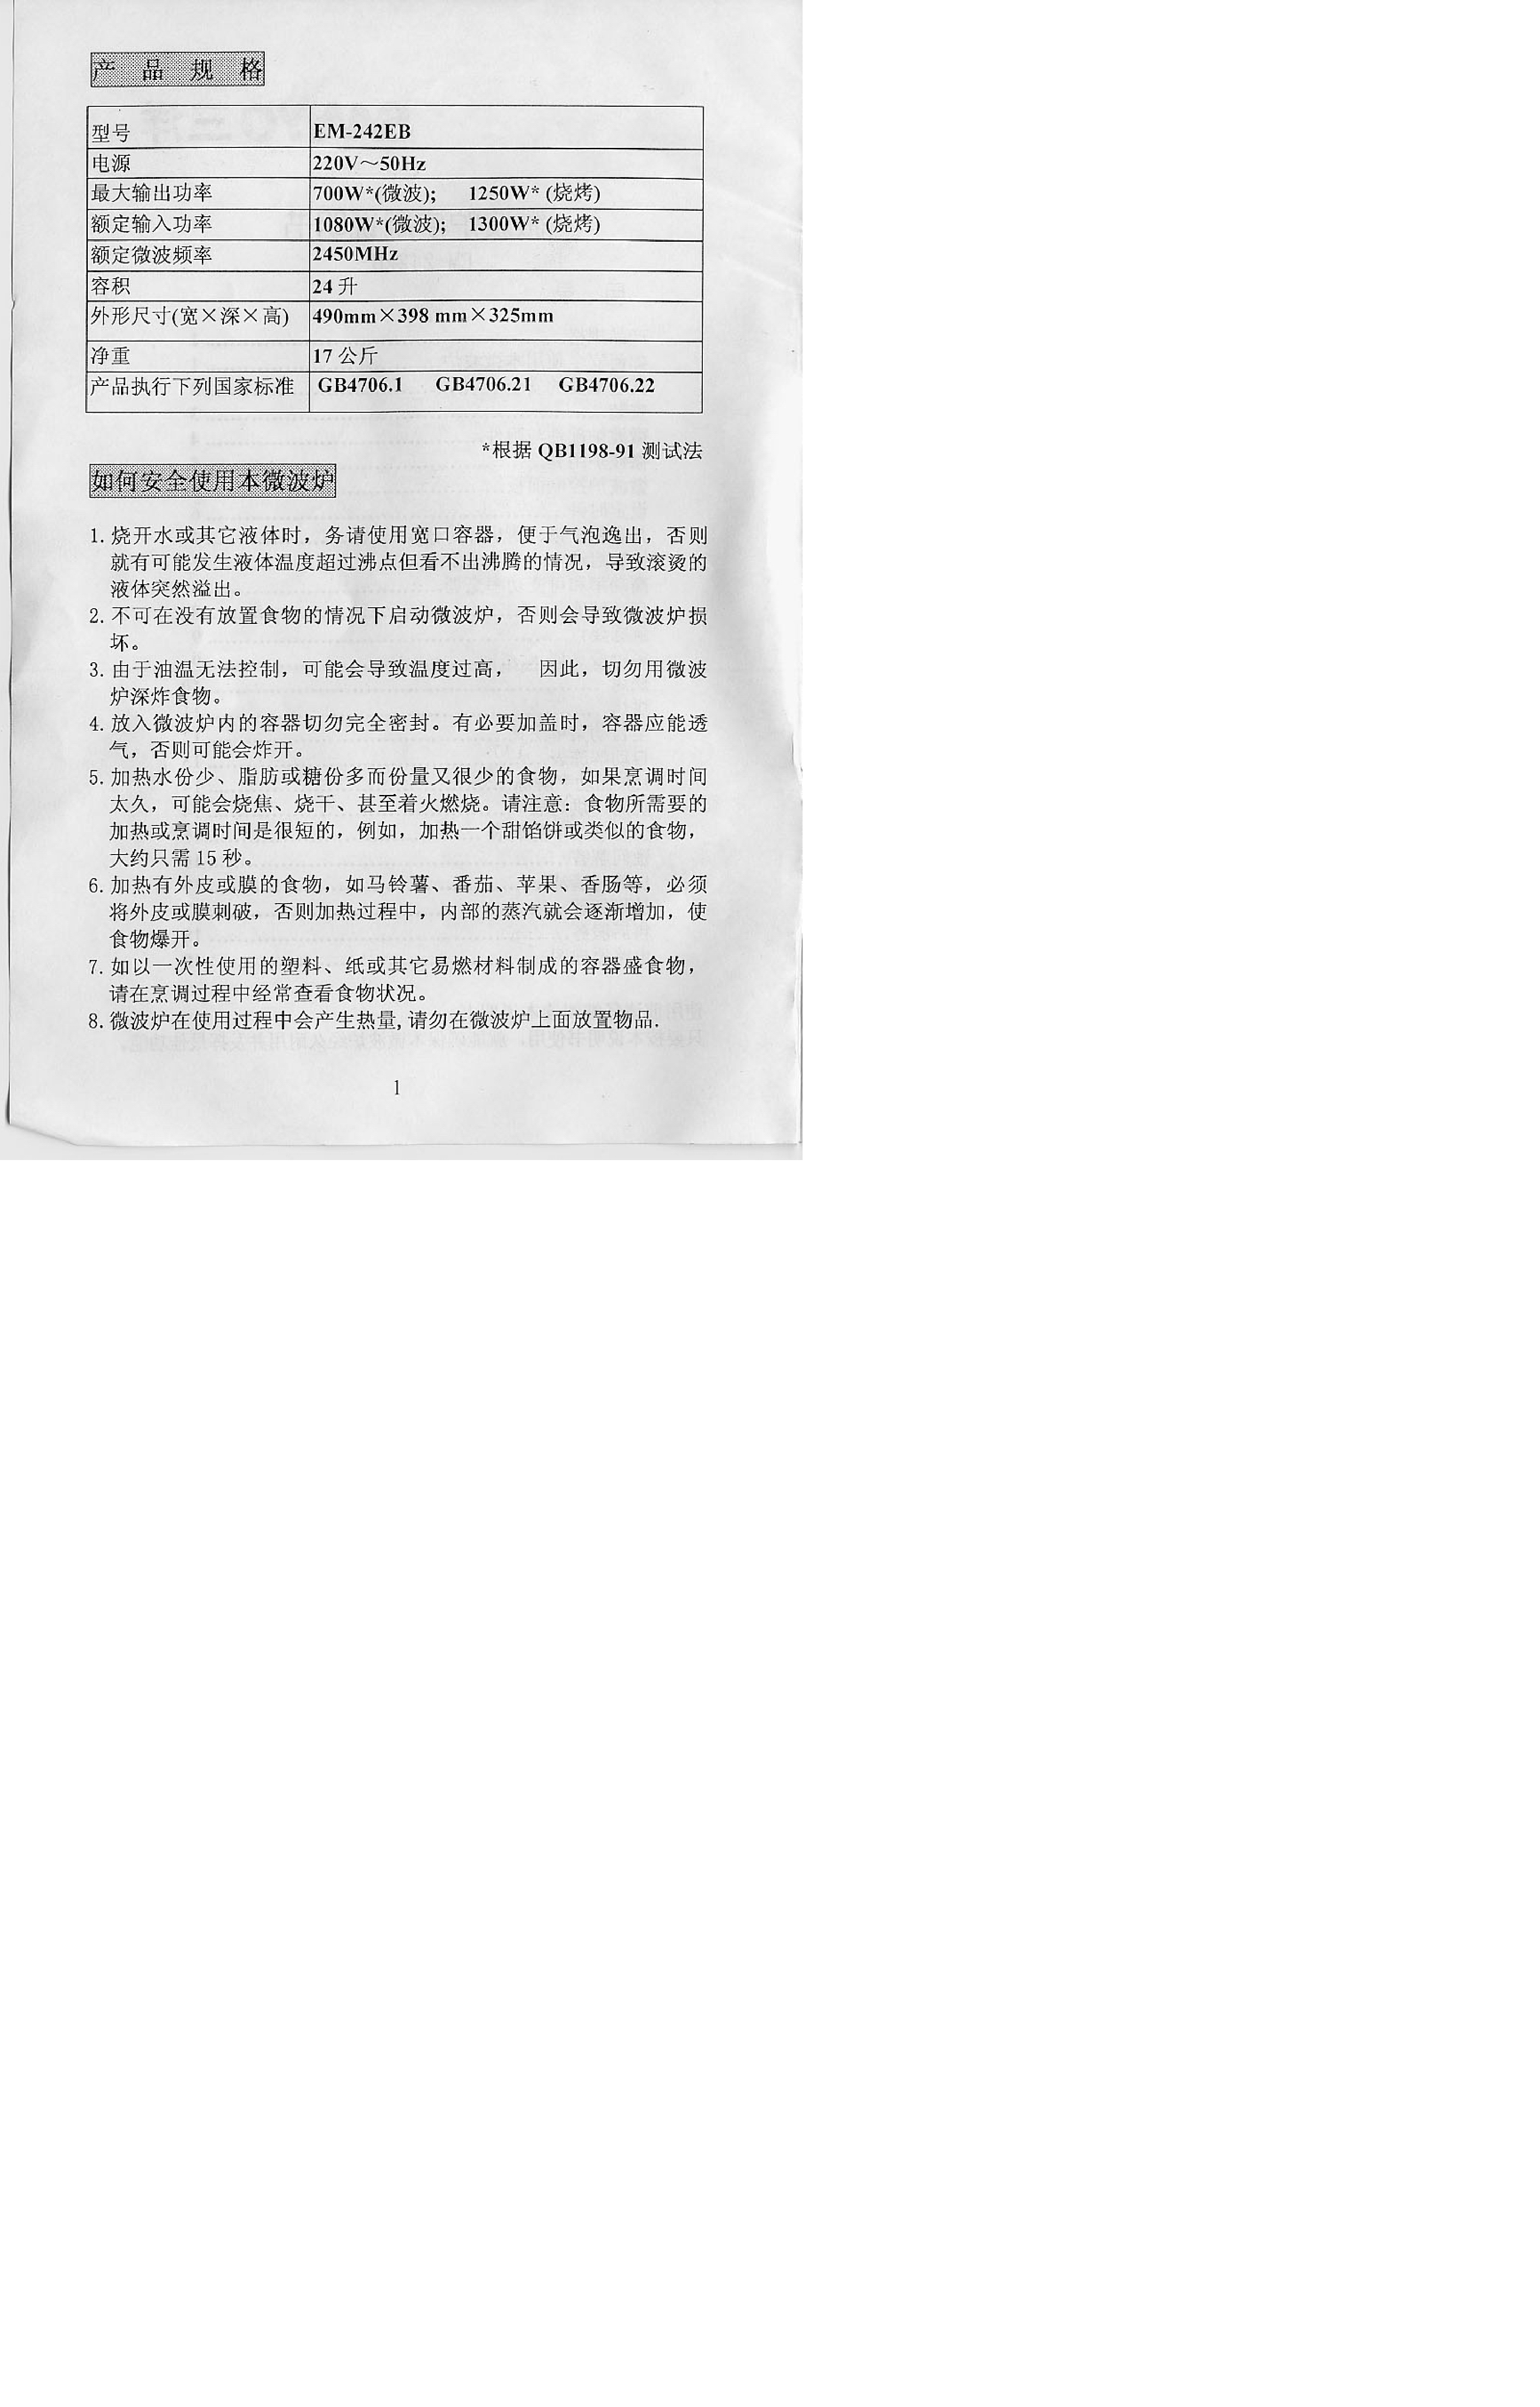 三洋 Sanyo EM-242EB 说明书 第1页